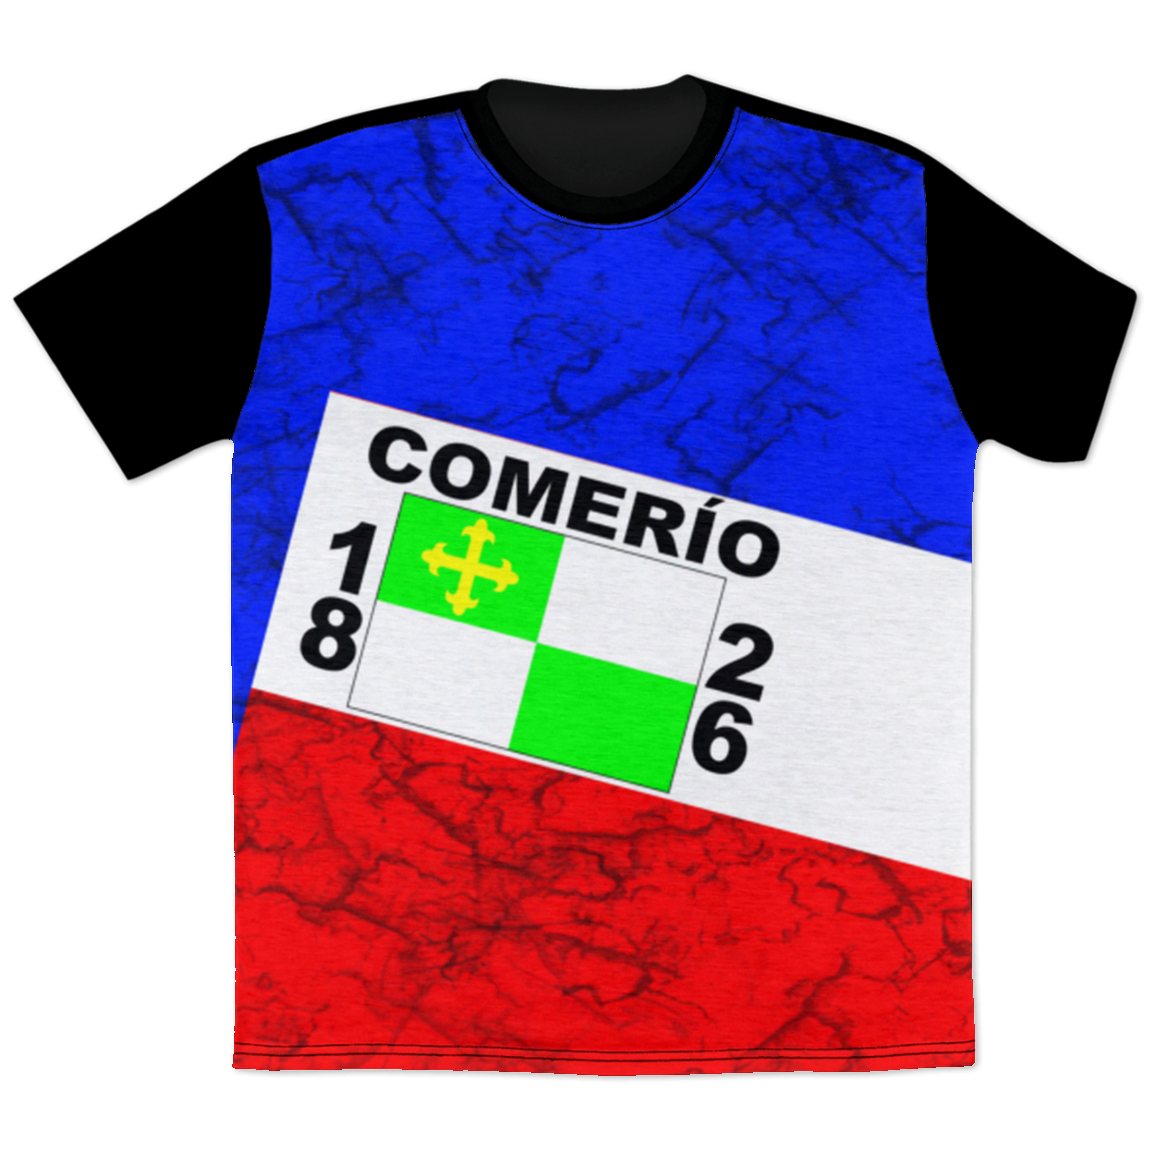 Comerio T-Shirt - Puerto Rican Pride